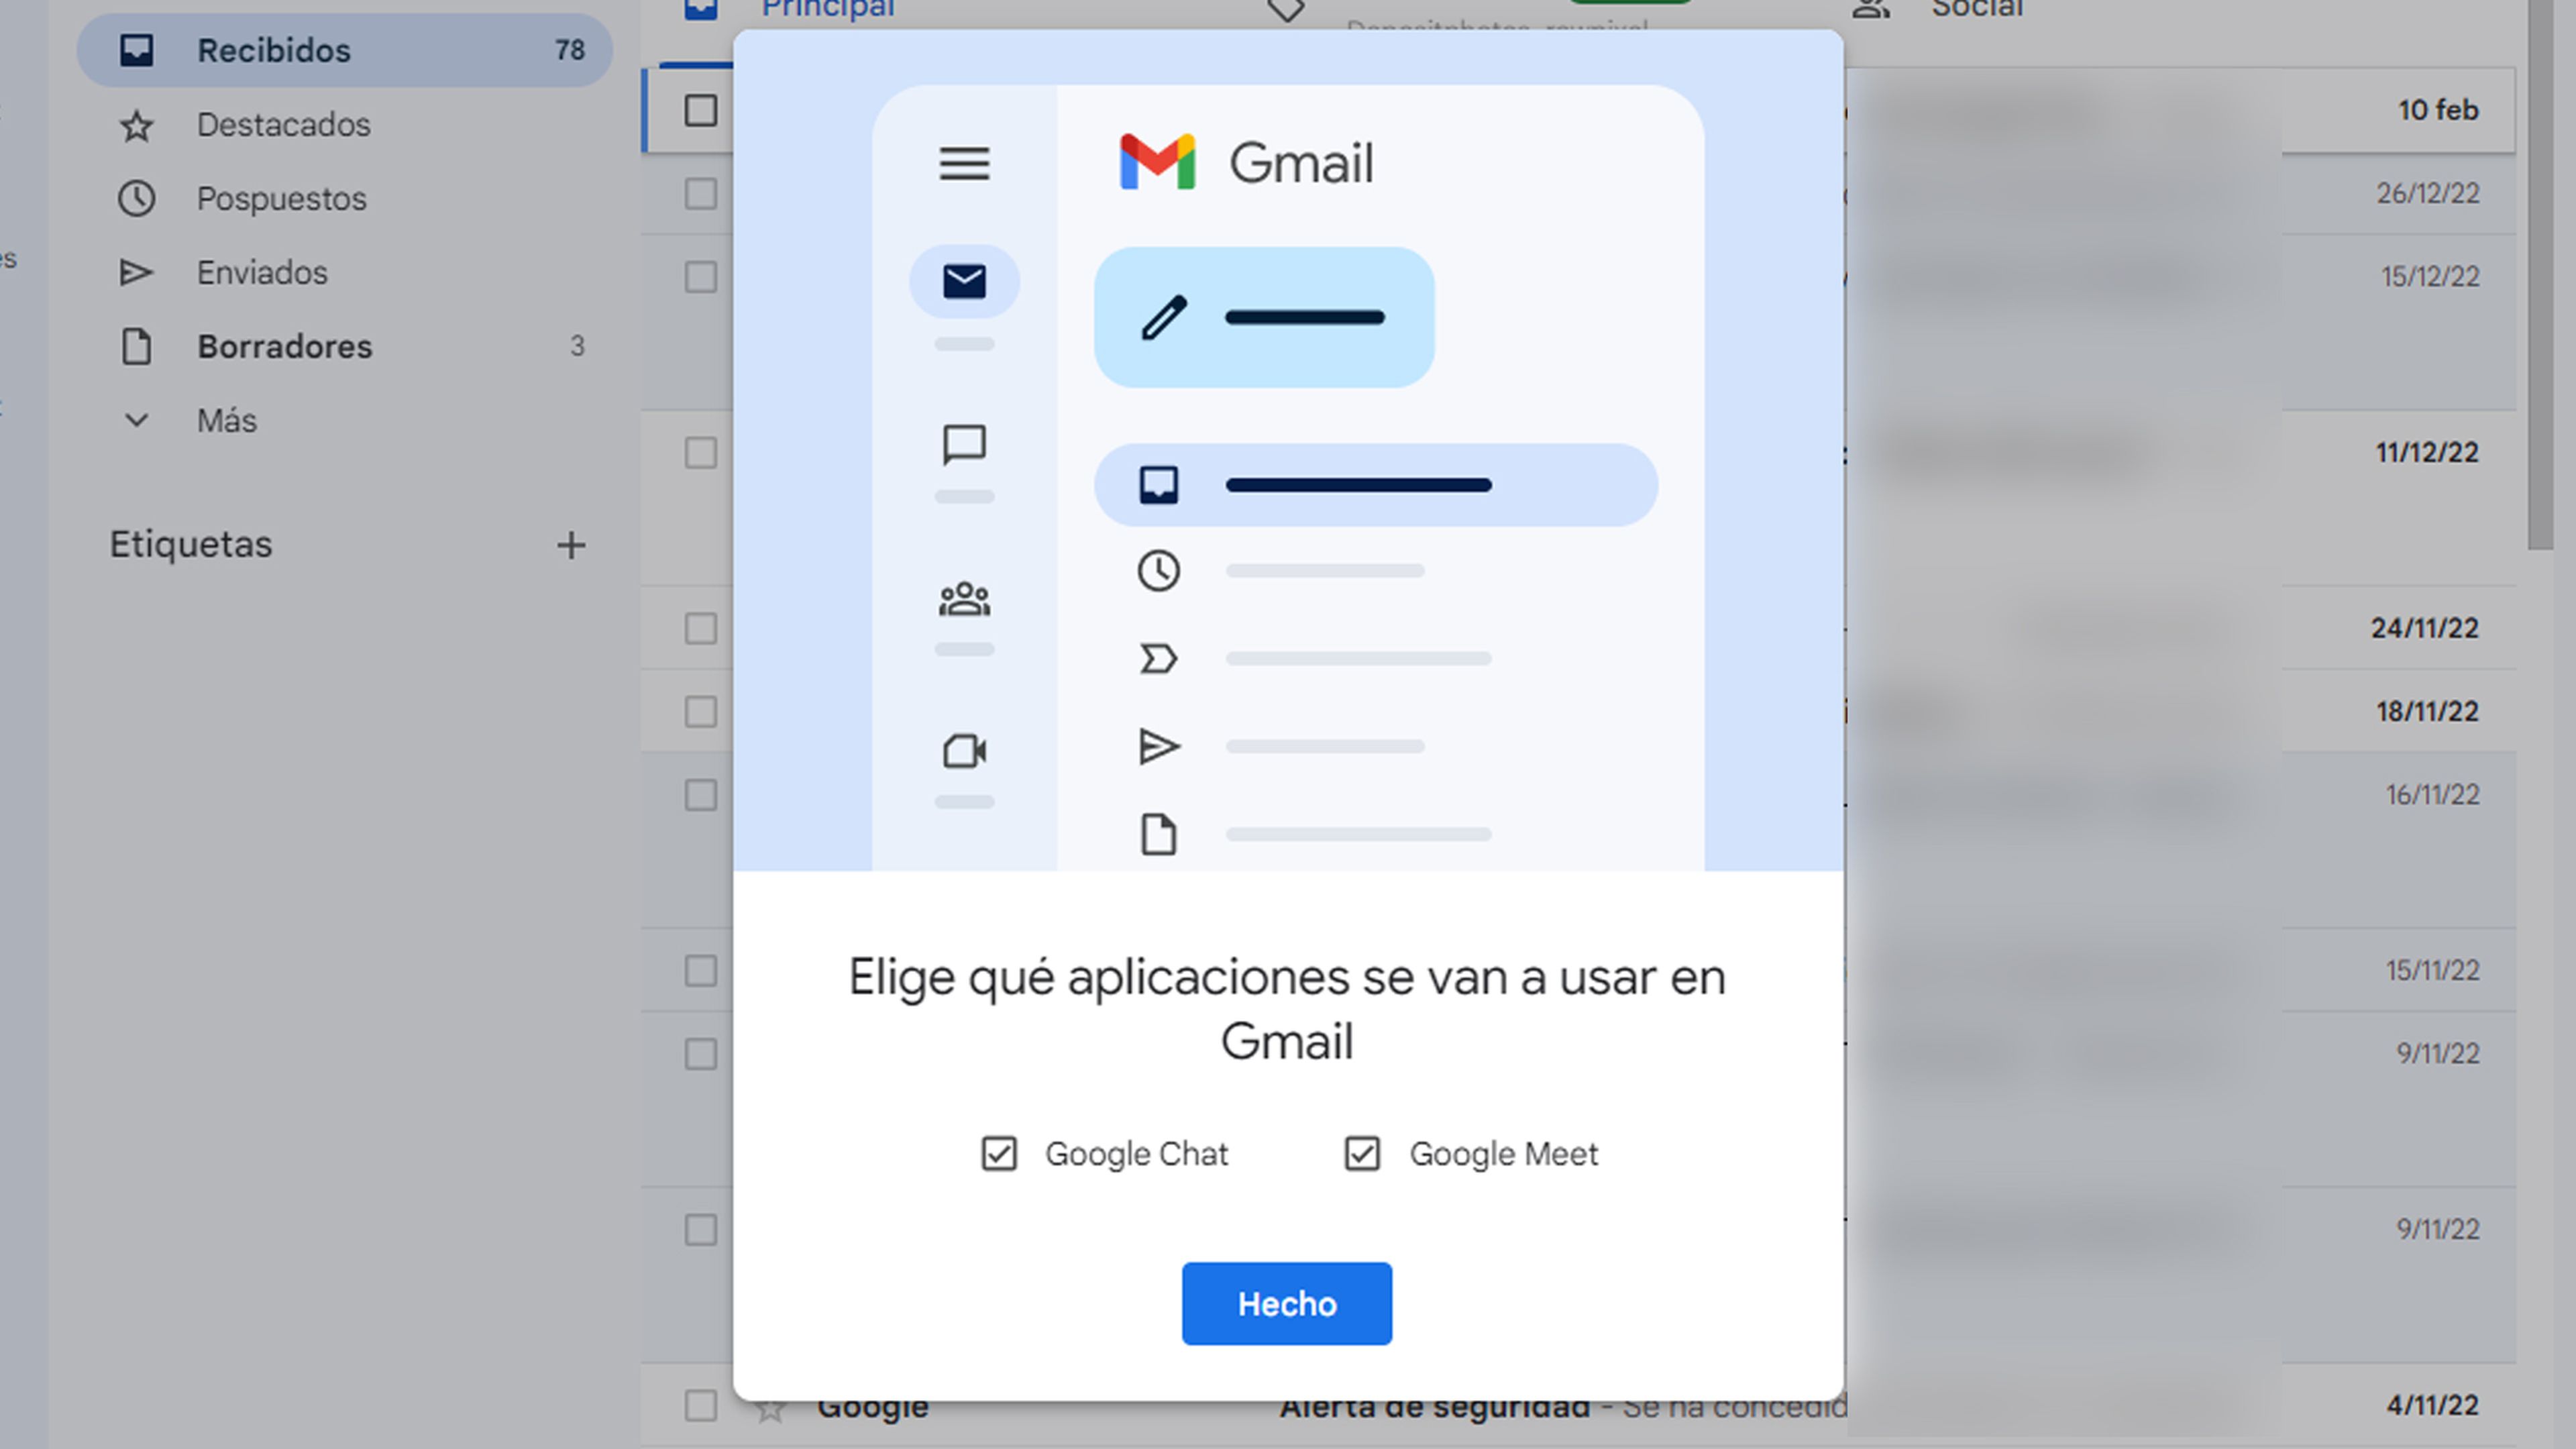 Eliminar Chat y Meet de Gmail